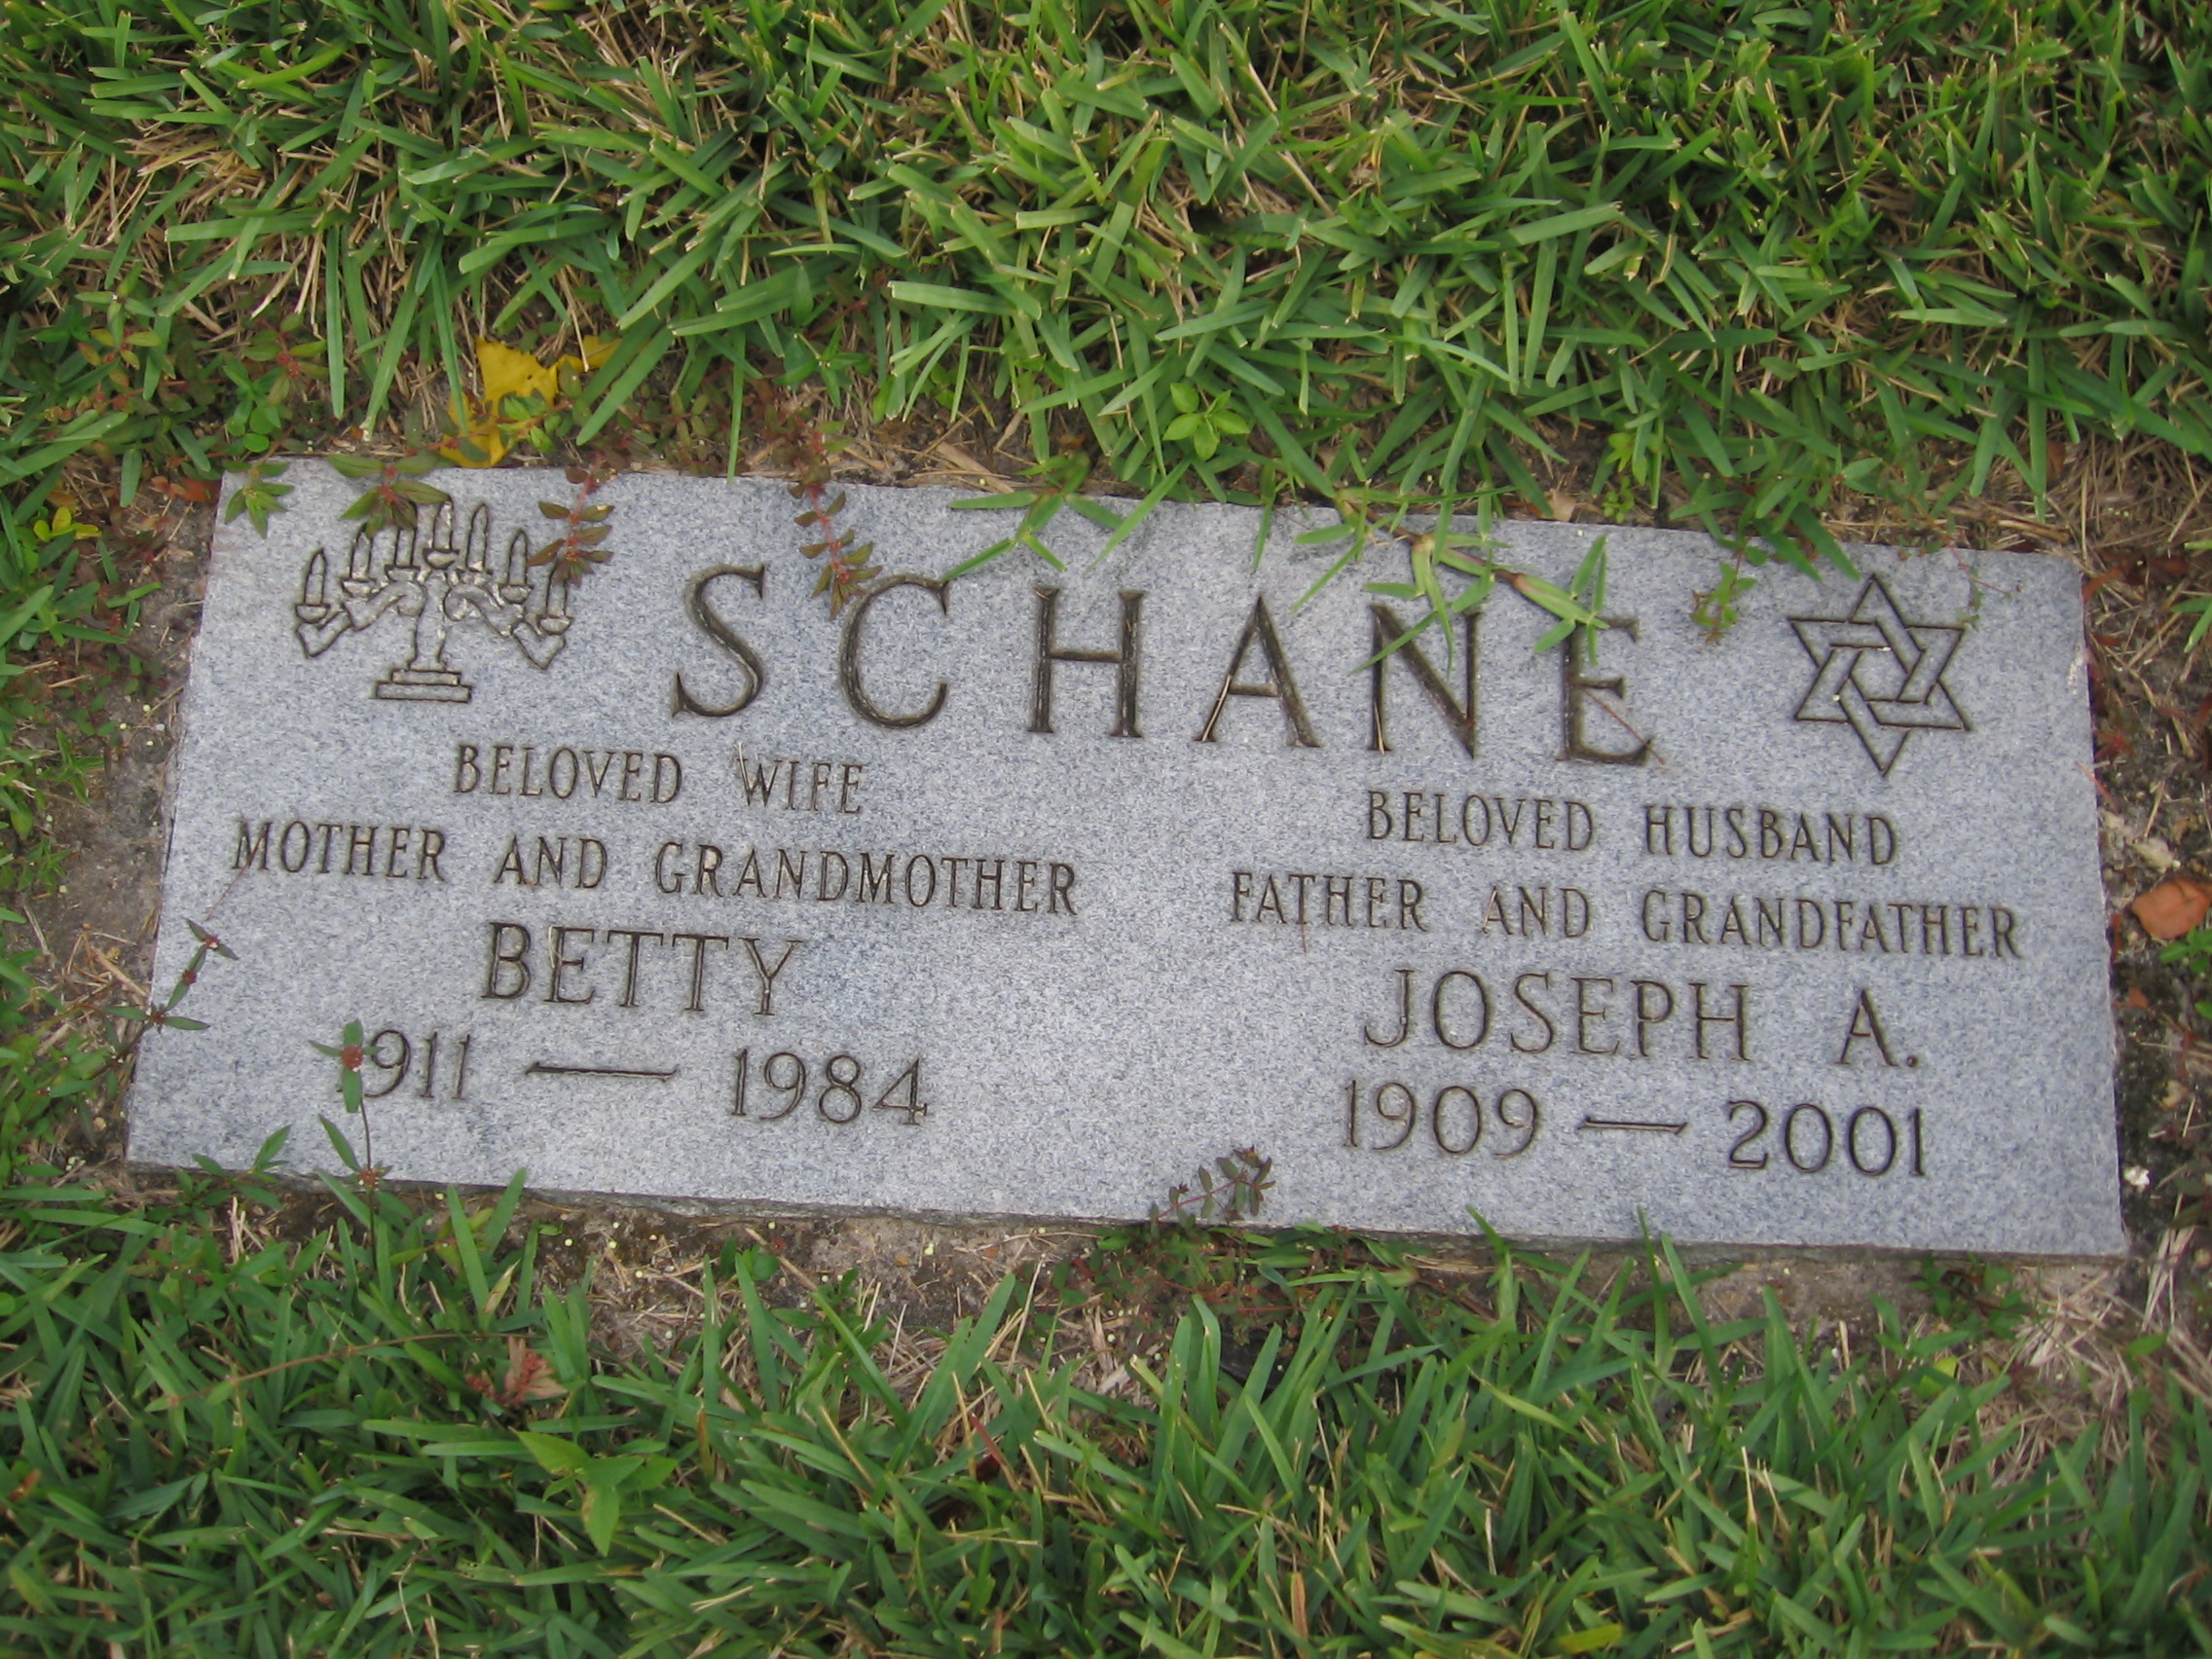 Betty Schane